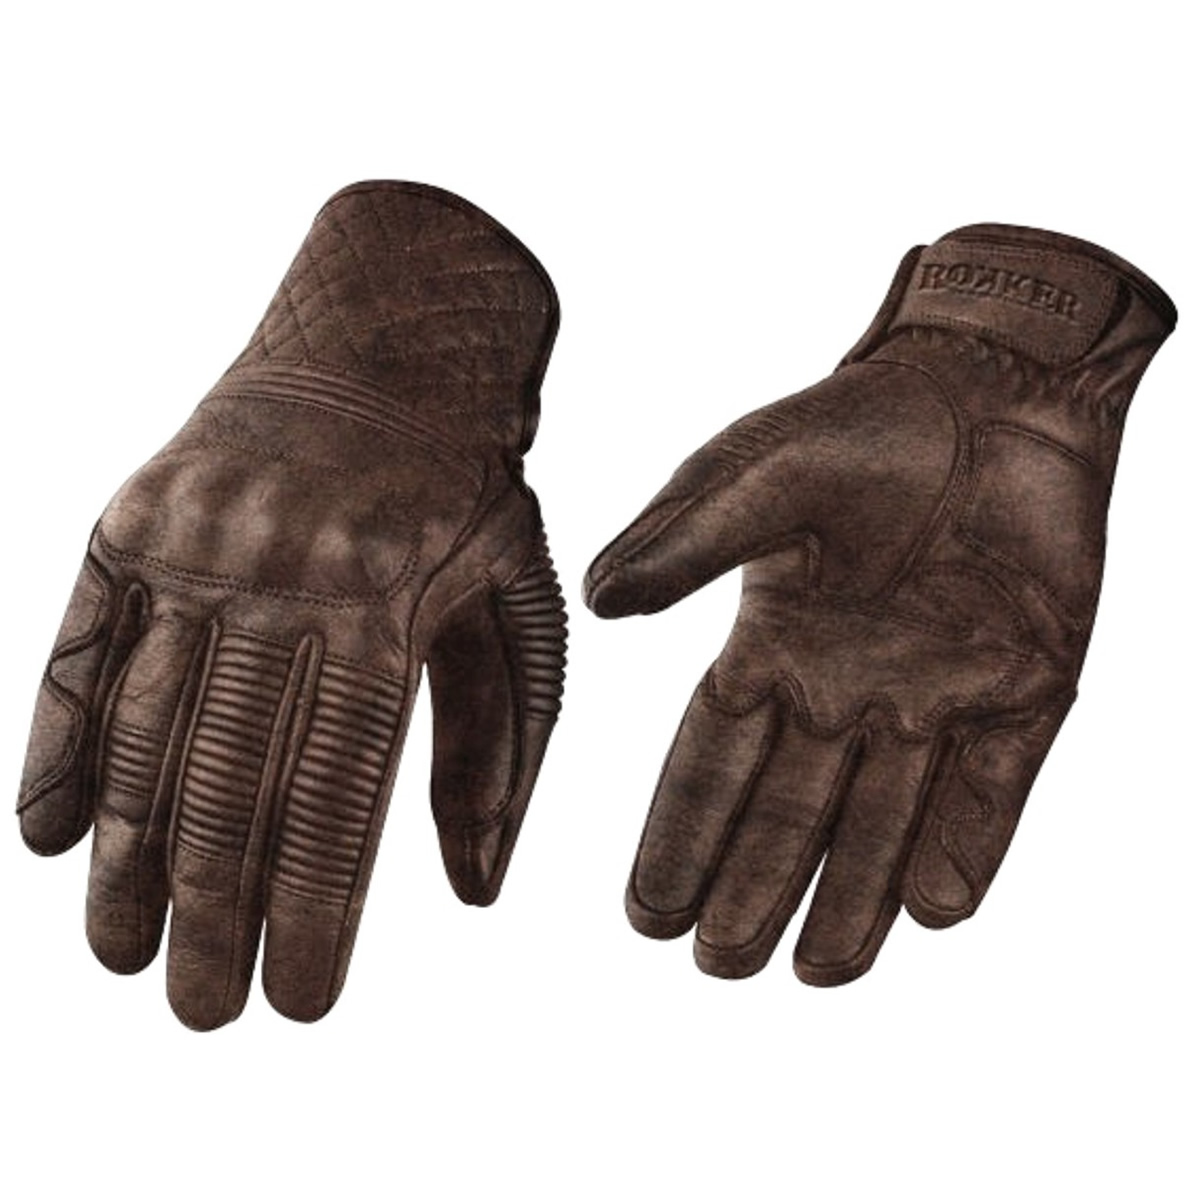 ROKKER Handschuhe Tucson, braun